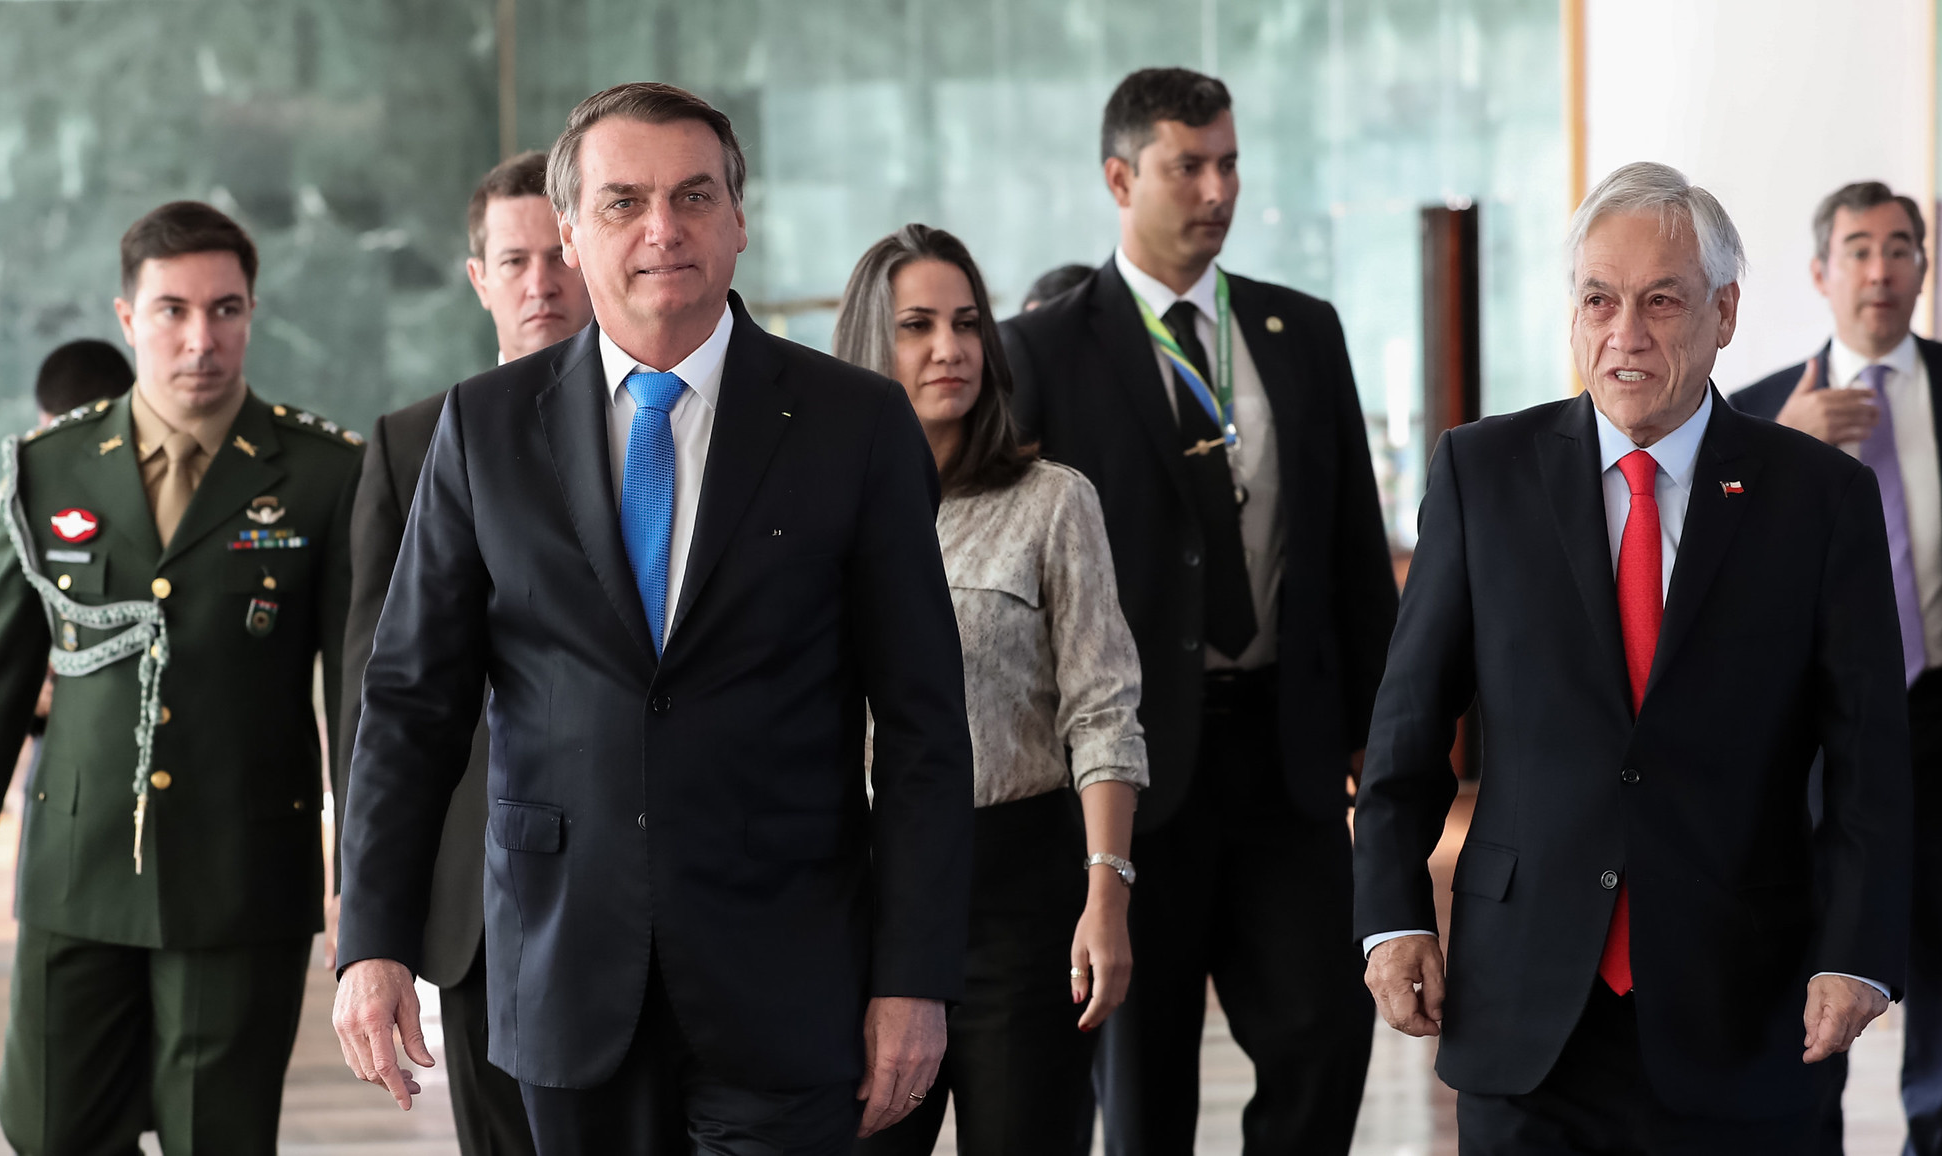 Líderes sul-americanos deverão se reunir no dia 6 de setembro em Leticia, na Colômbia; Bolsonaro confirmou encontro após receber Piñera em Brasília